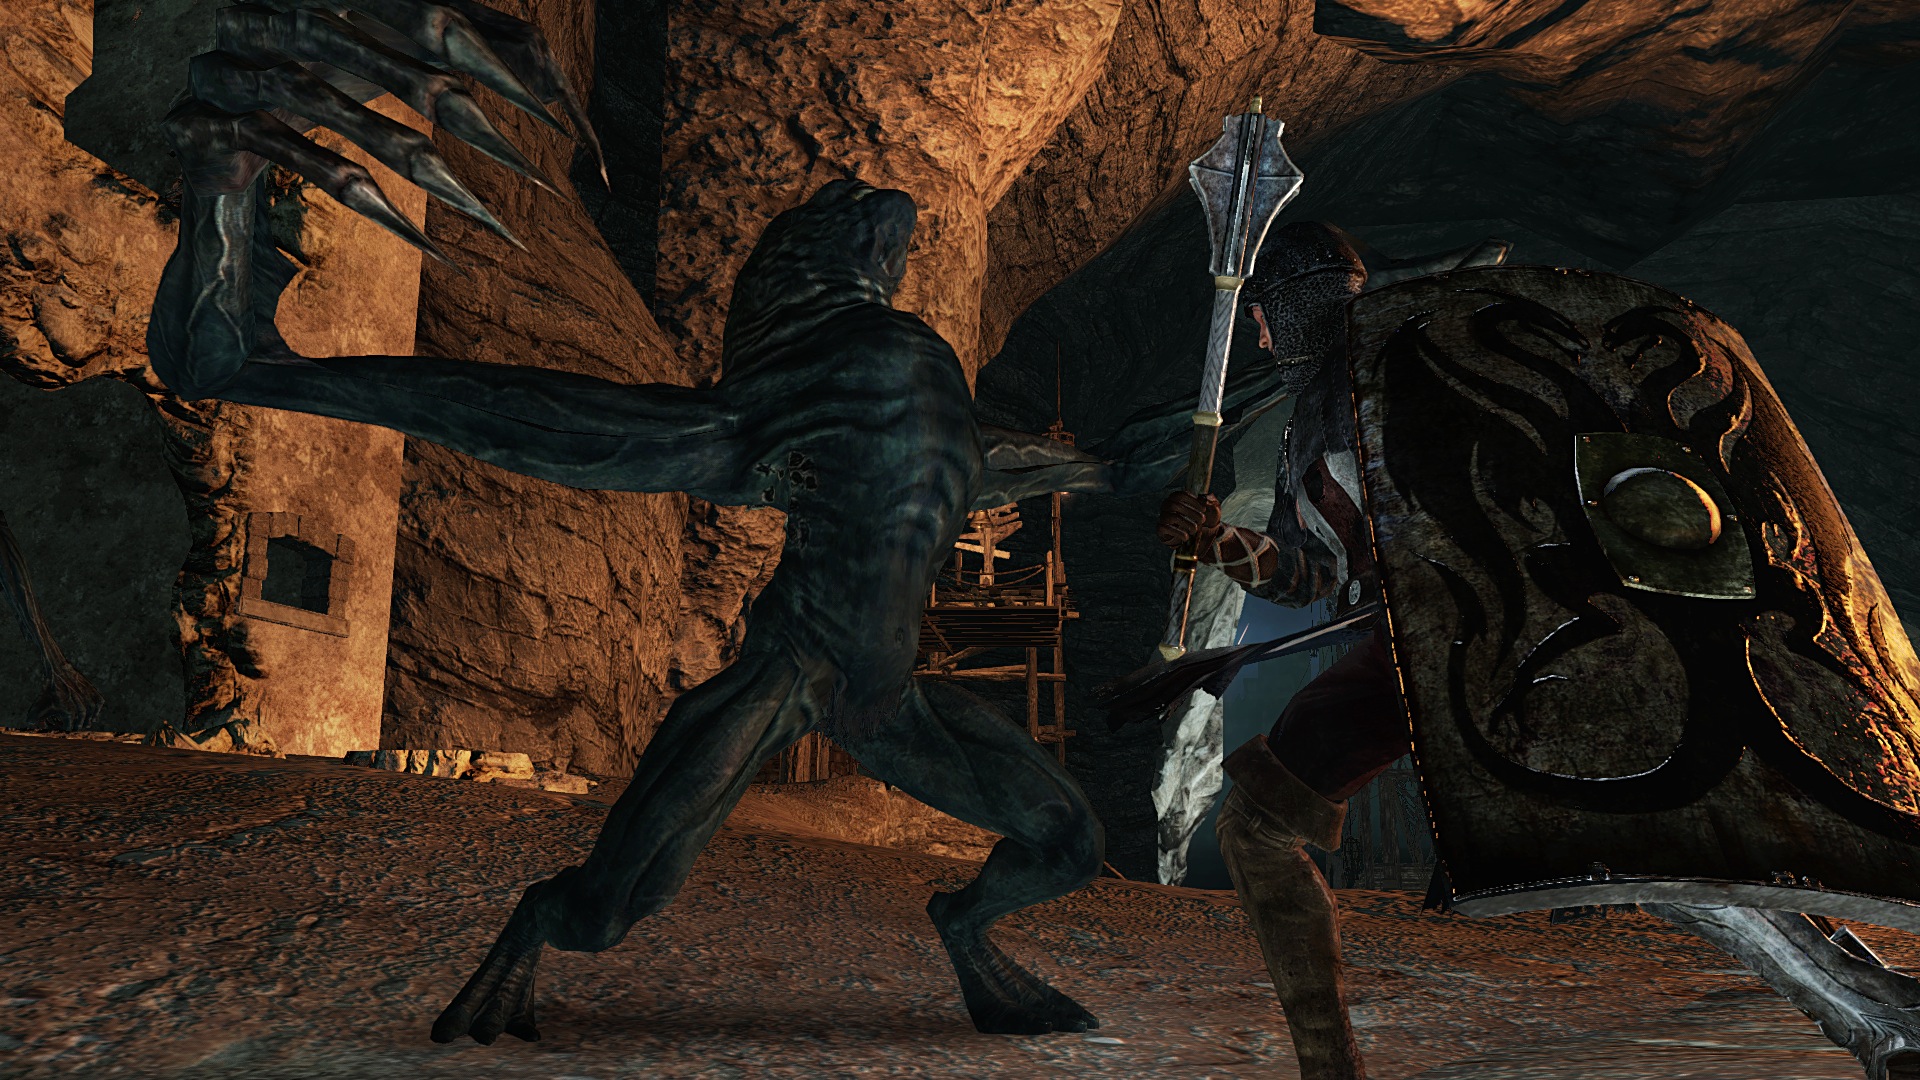 via ontploffen Verfijnen Dark Souls 2 Review Roundup - GameSpot